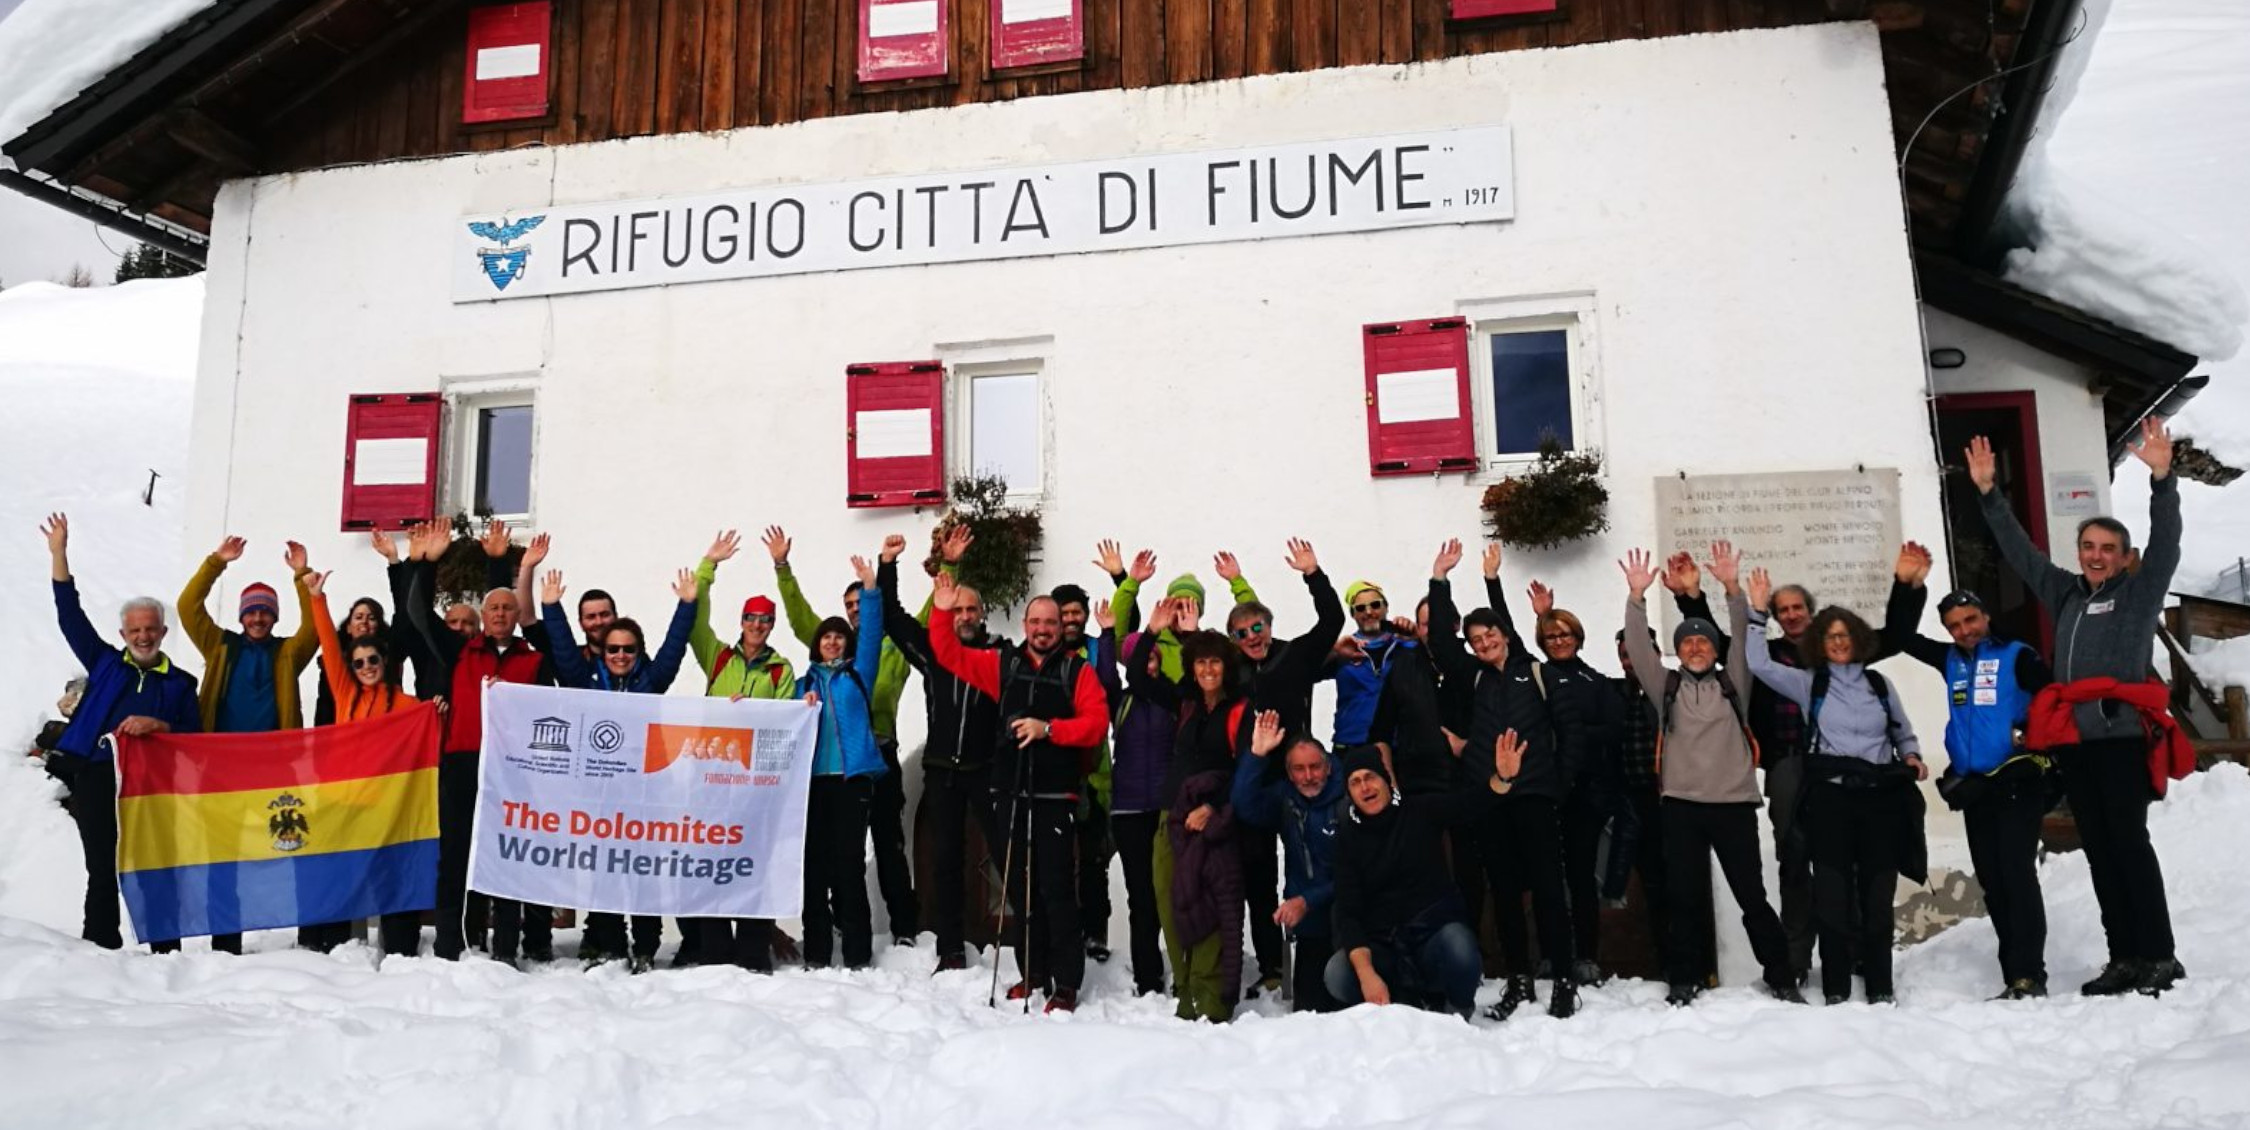 SchutzhüttenbetreiberInnen des Dolomiten Welterbes bei der Schutzhütte Rifugio Città di Fiume